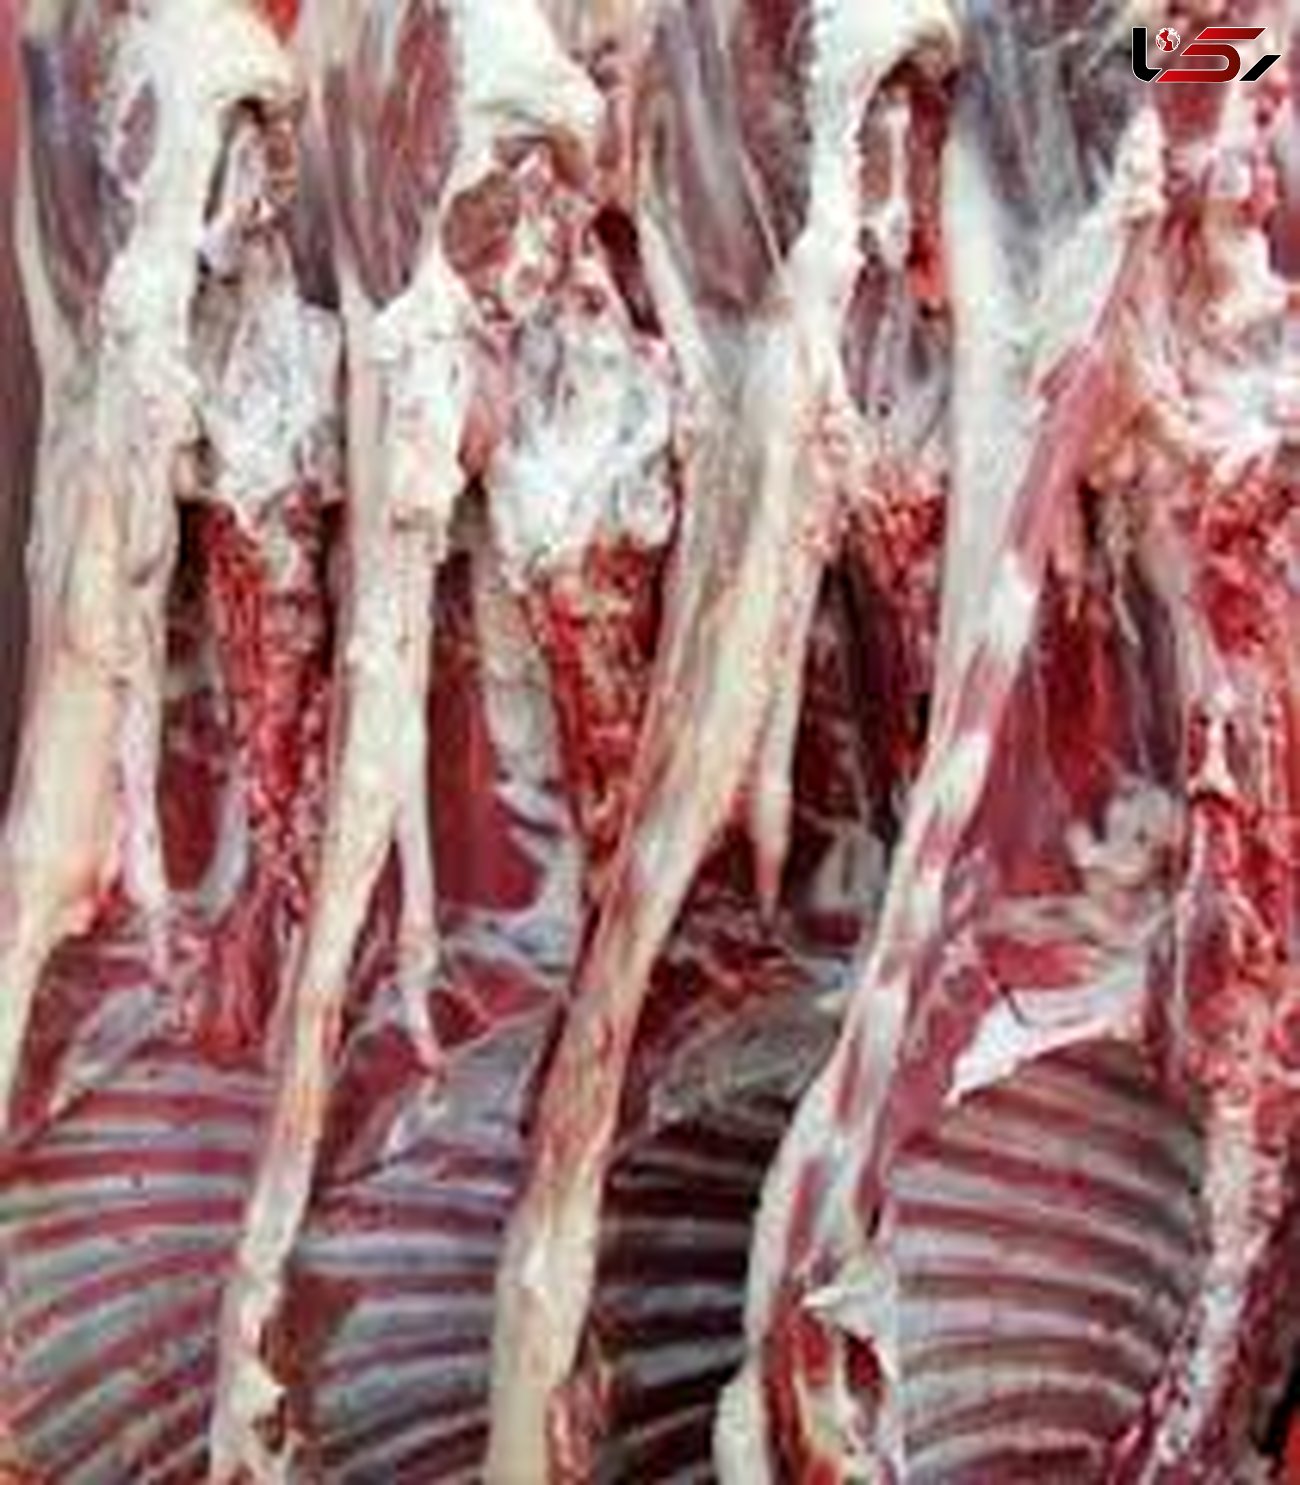 نرخ انواع گوشت گوسفند و گوساله در بازار